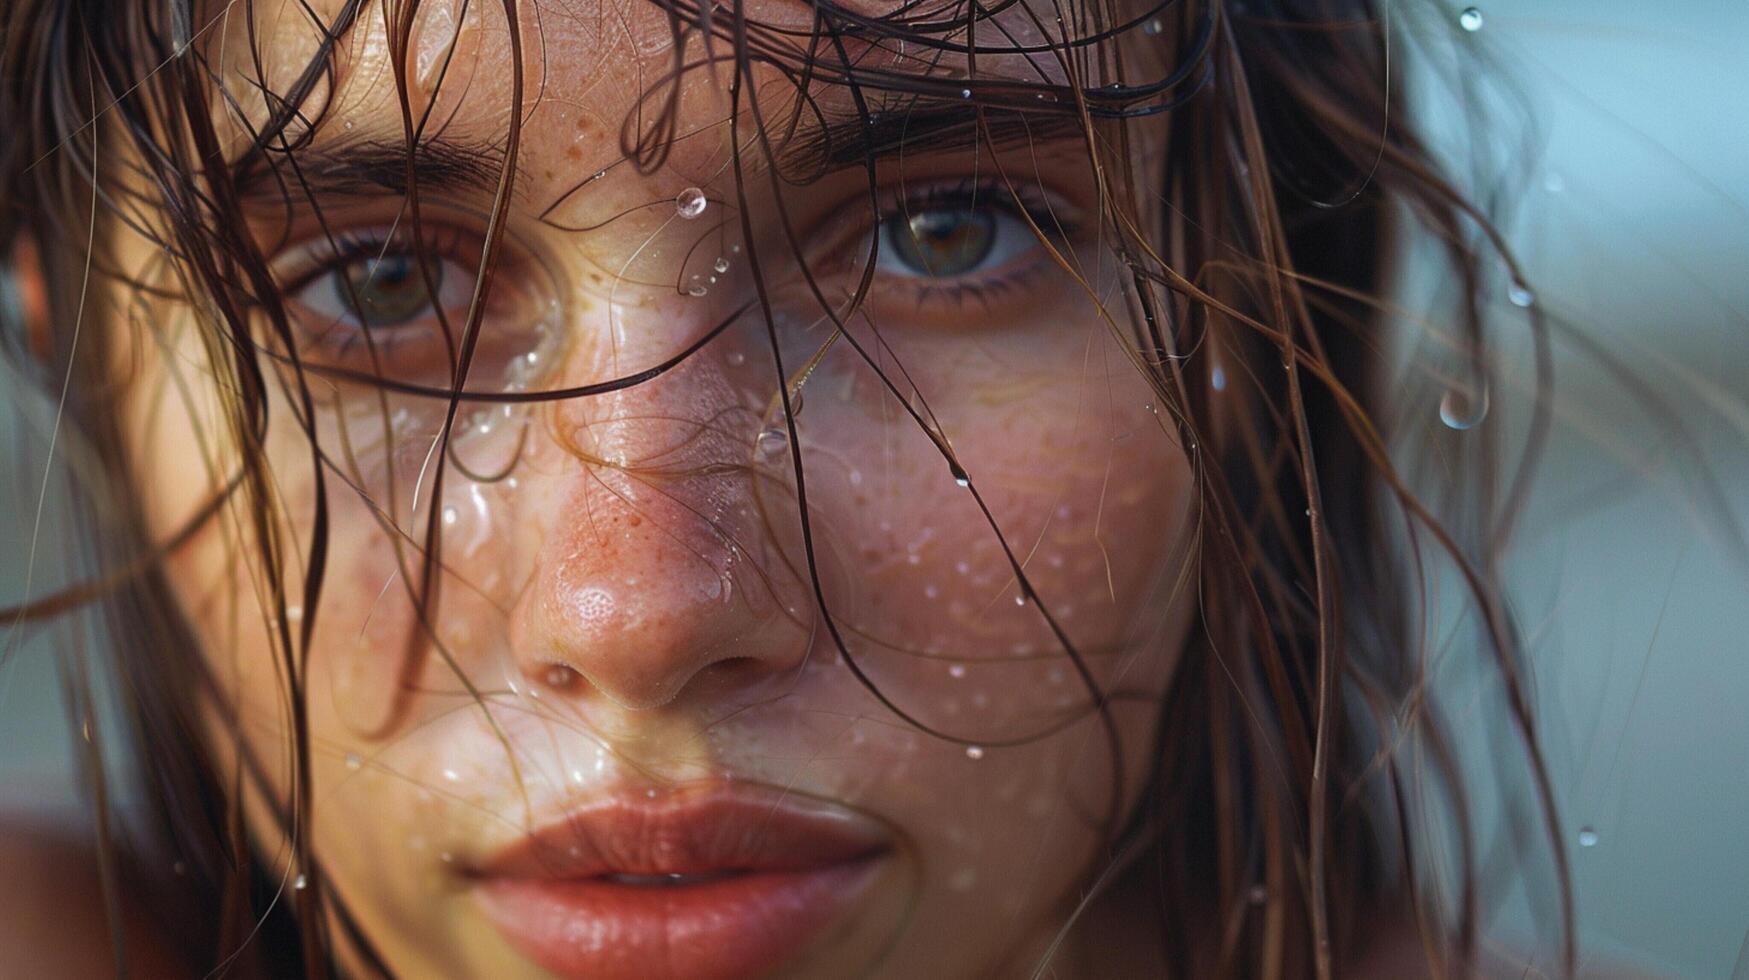 hermosa joven mujer con mojado marrón pelo mirando foto